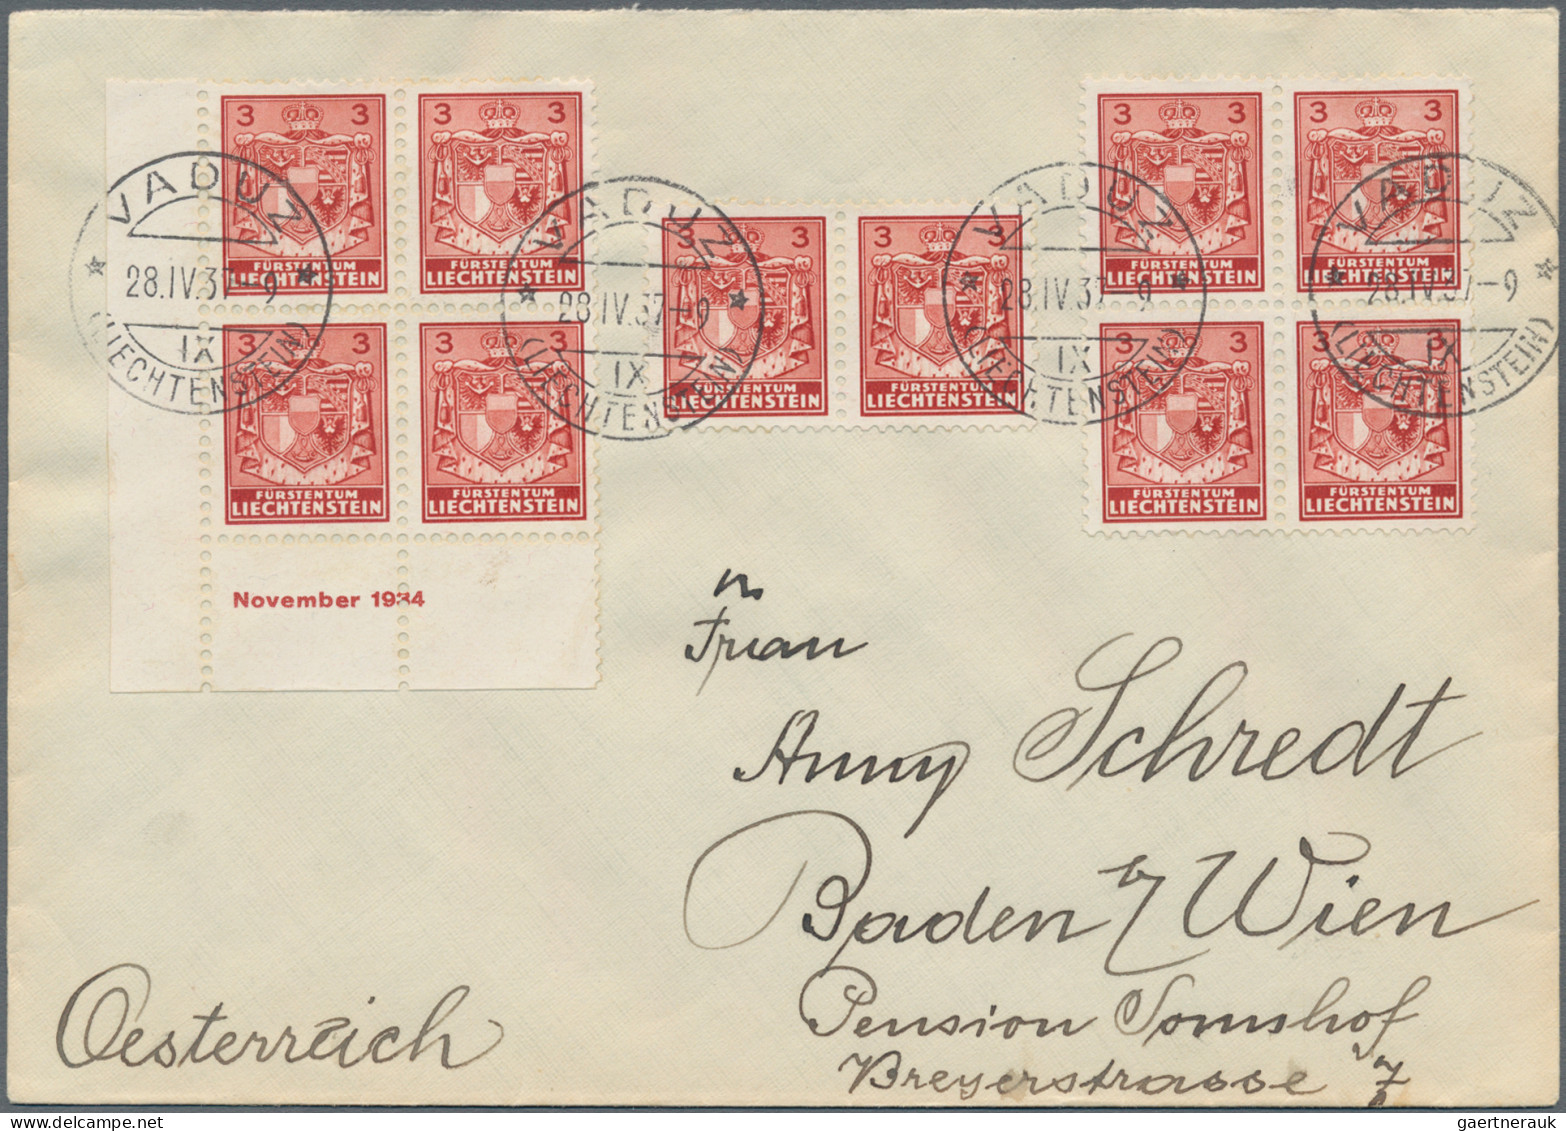 Liechtenstein: 1934, sauberes Lot mit 25 Briefen und Karten der Kosel II-Freimar